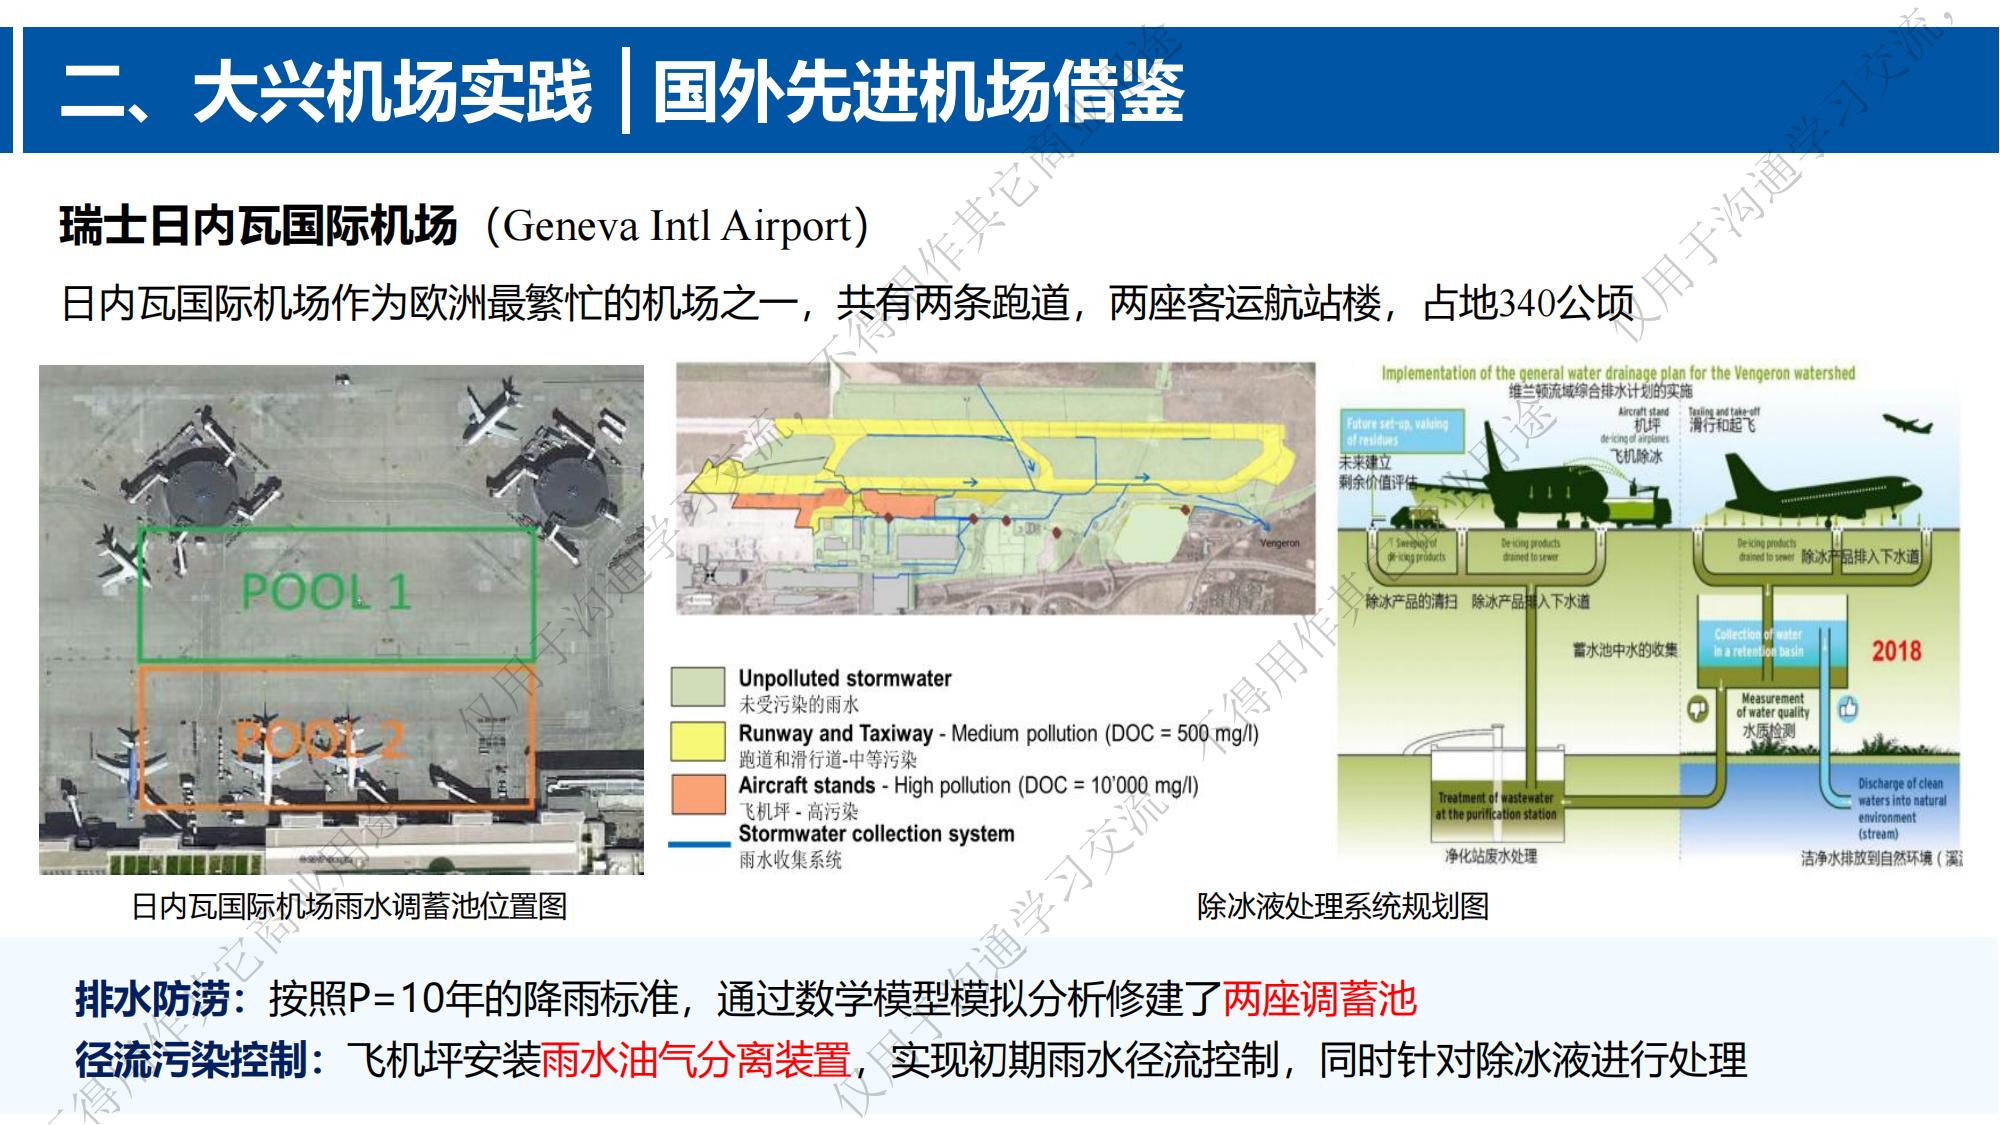 专家报告丨张韵：“海绵机场”范式探索与实践—— 以大兴国际机场为例